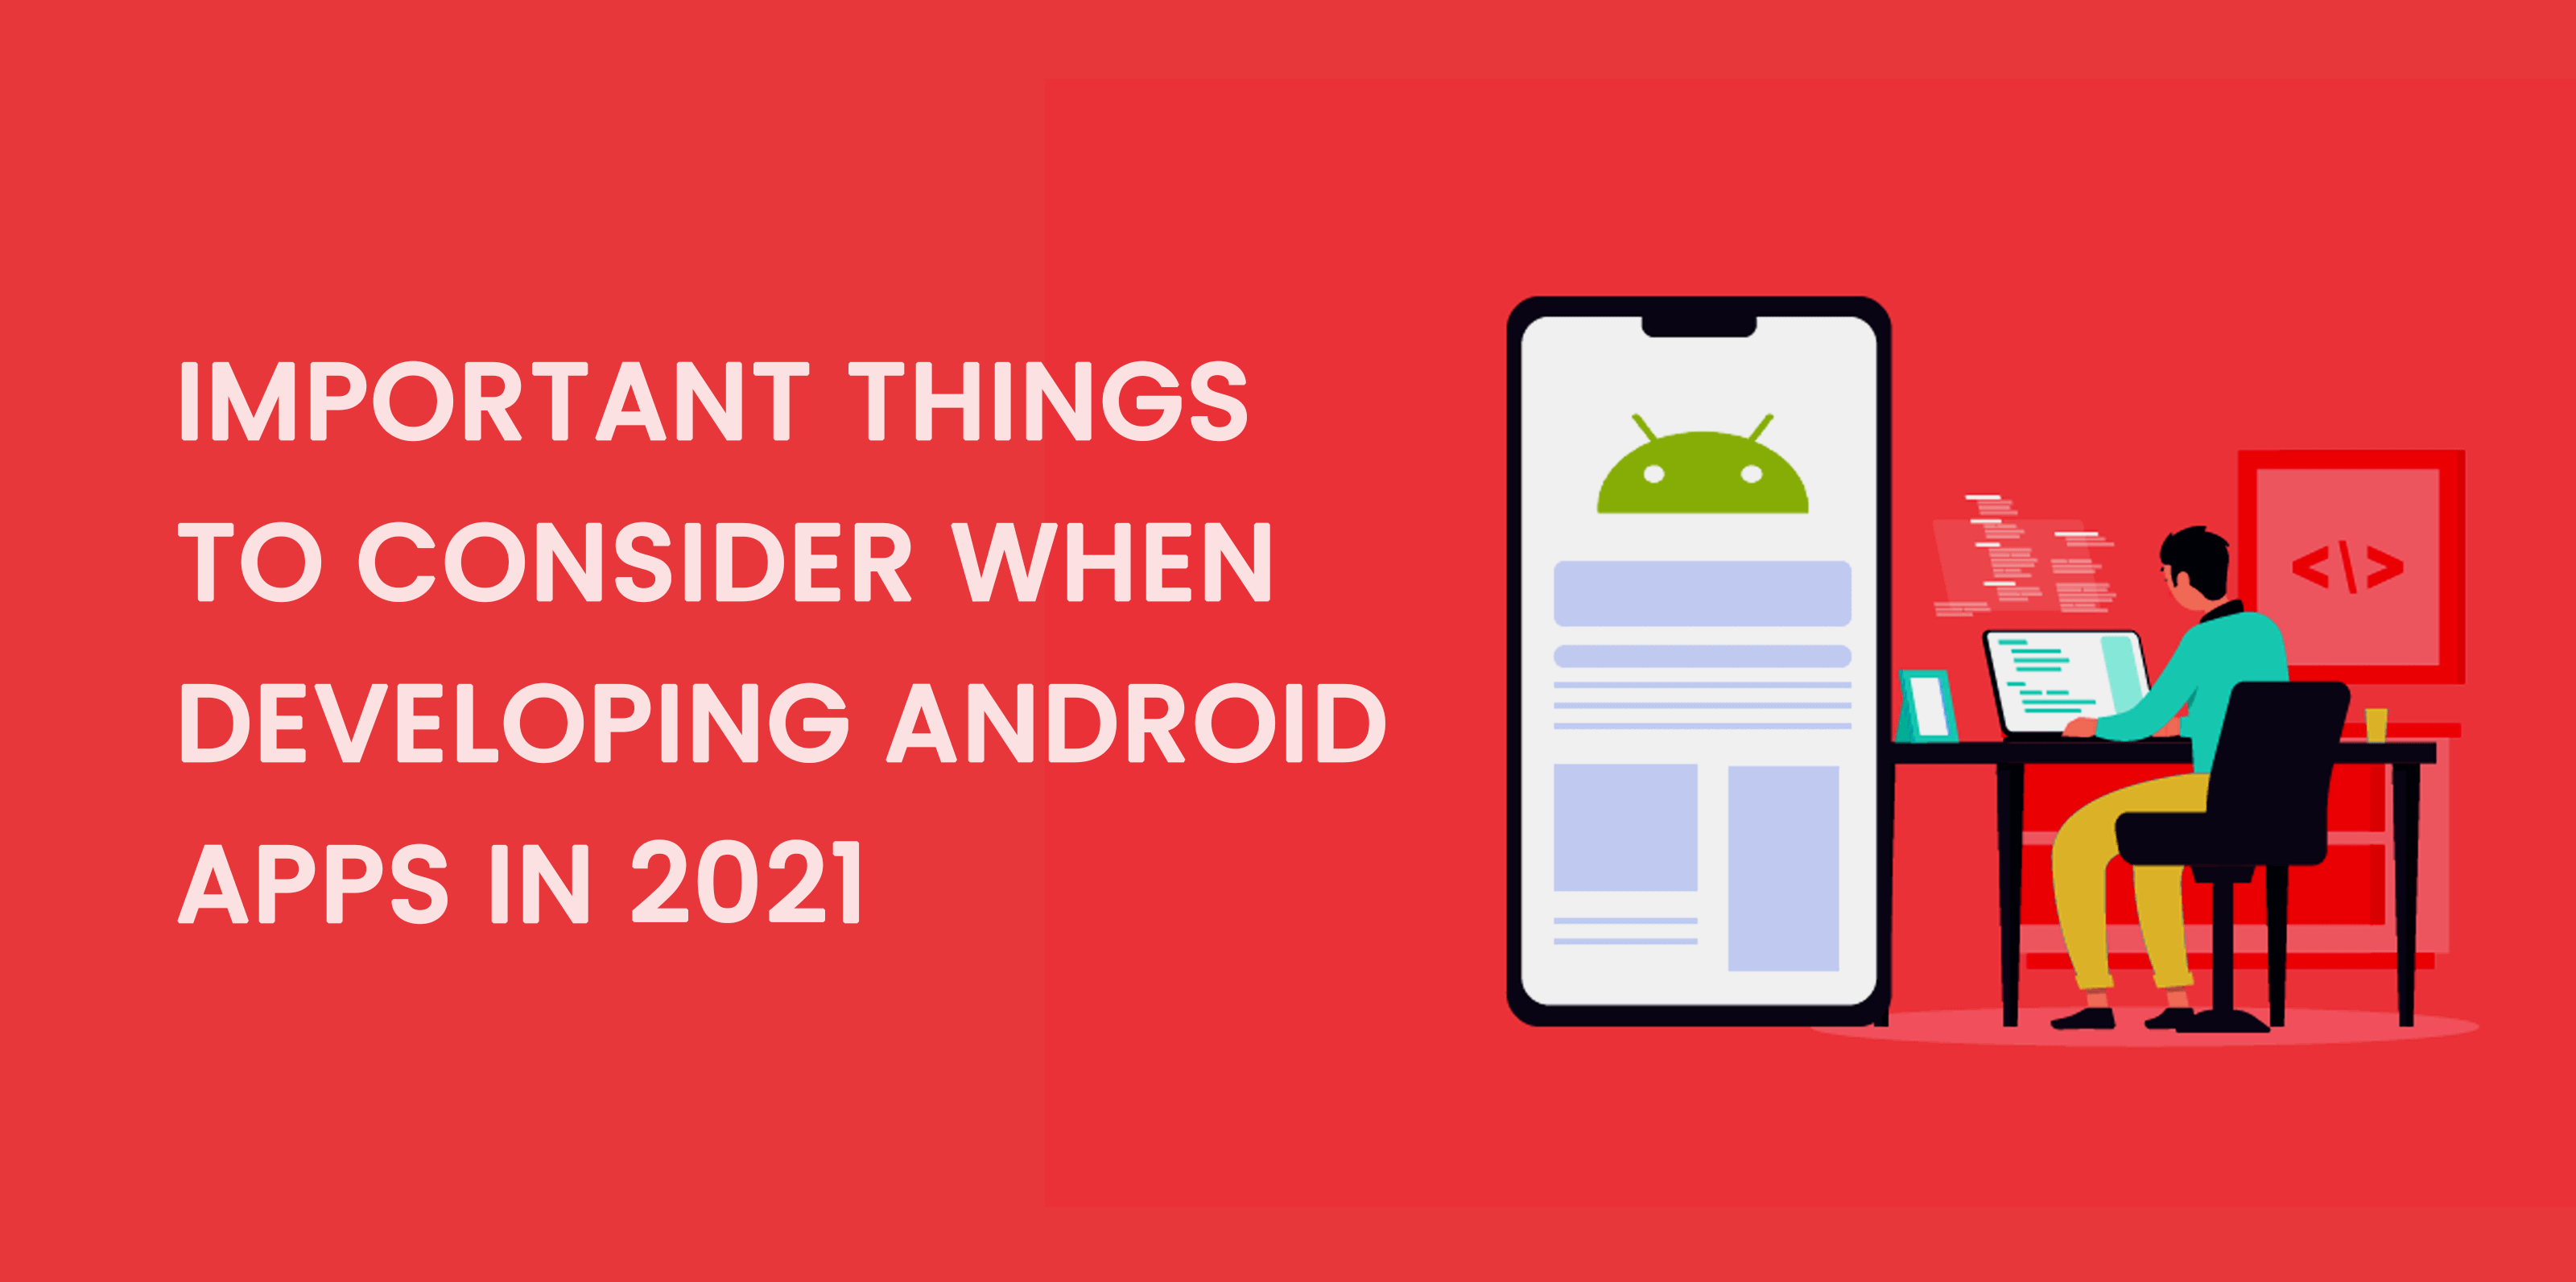 Cose-importanti-da-considerare-quando-sviluppi-app-Android-nel-2021